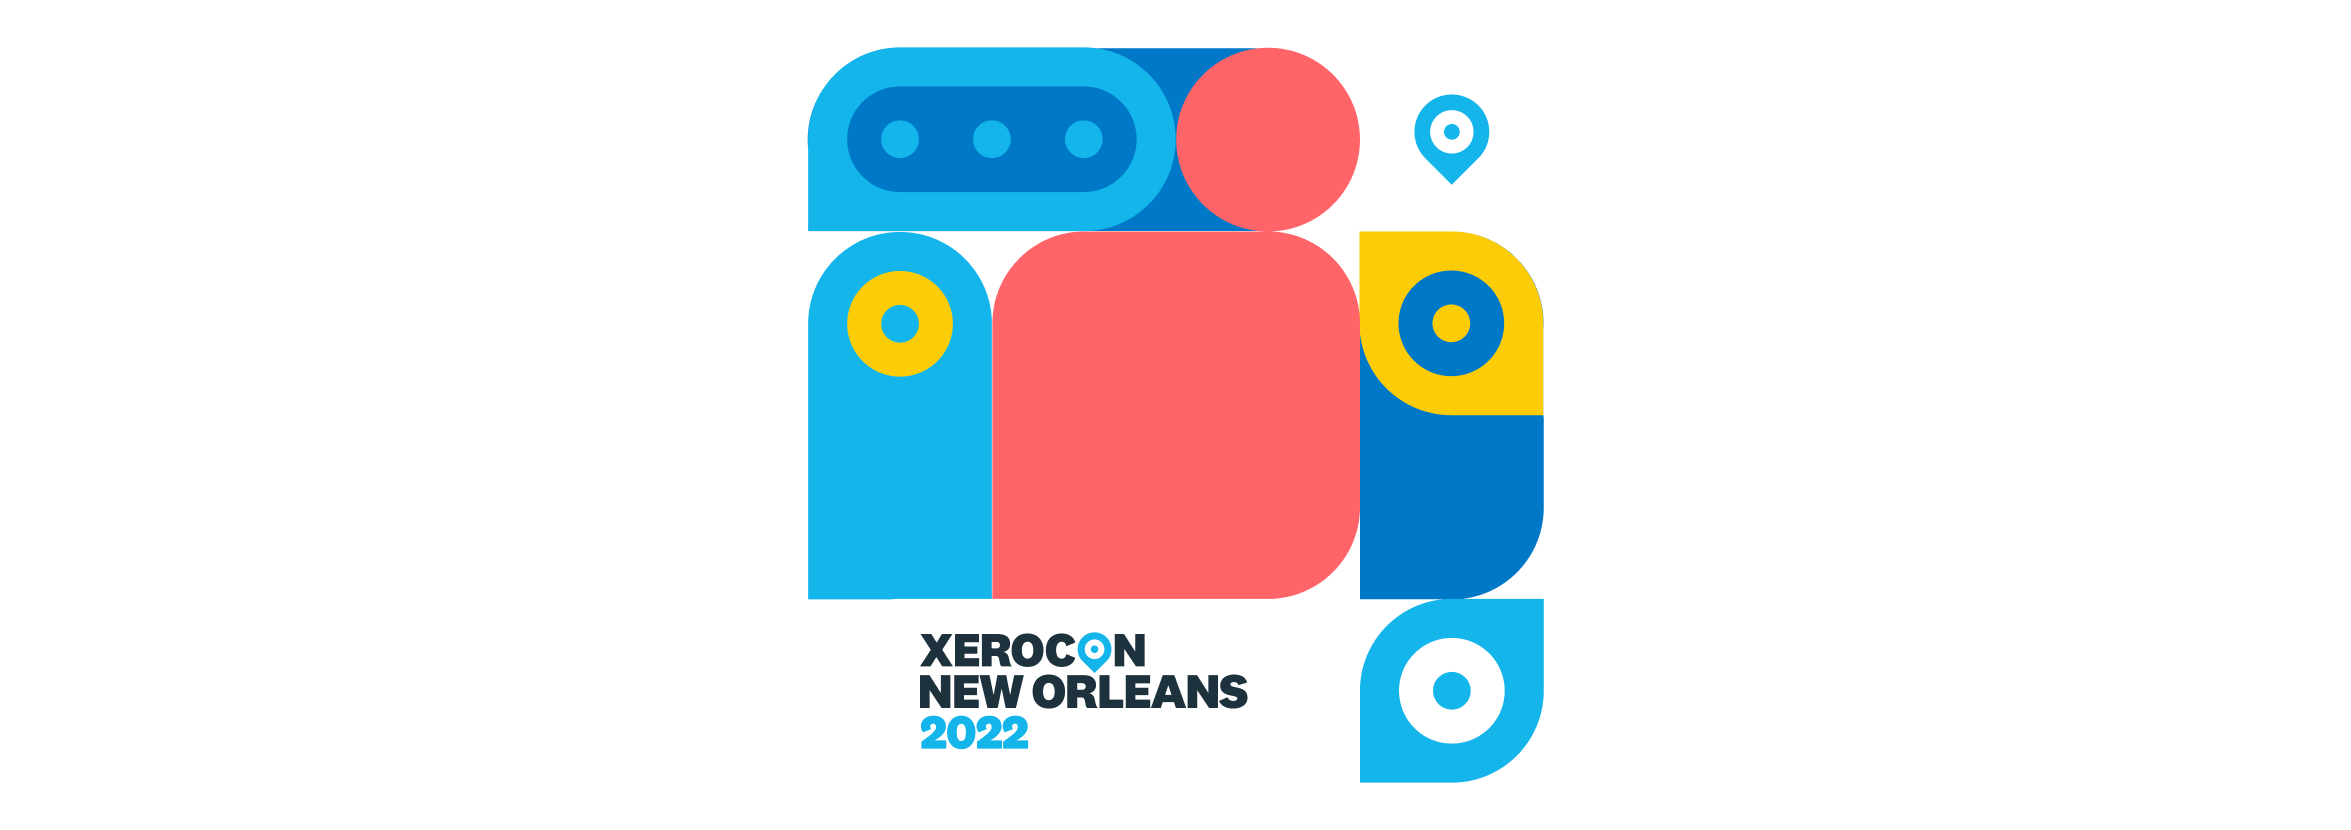 A logo of Xerocon New Orleans 2022.